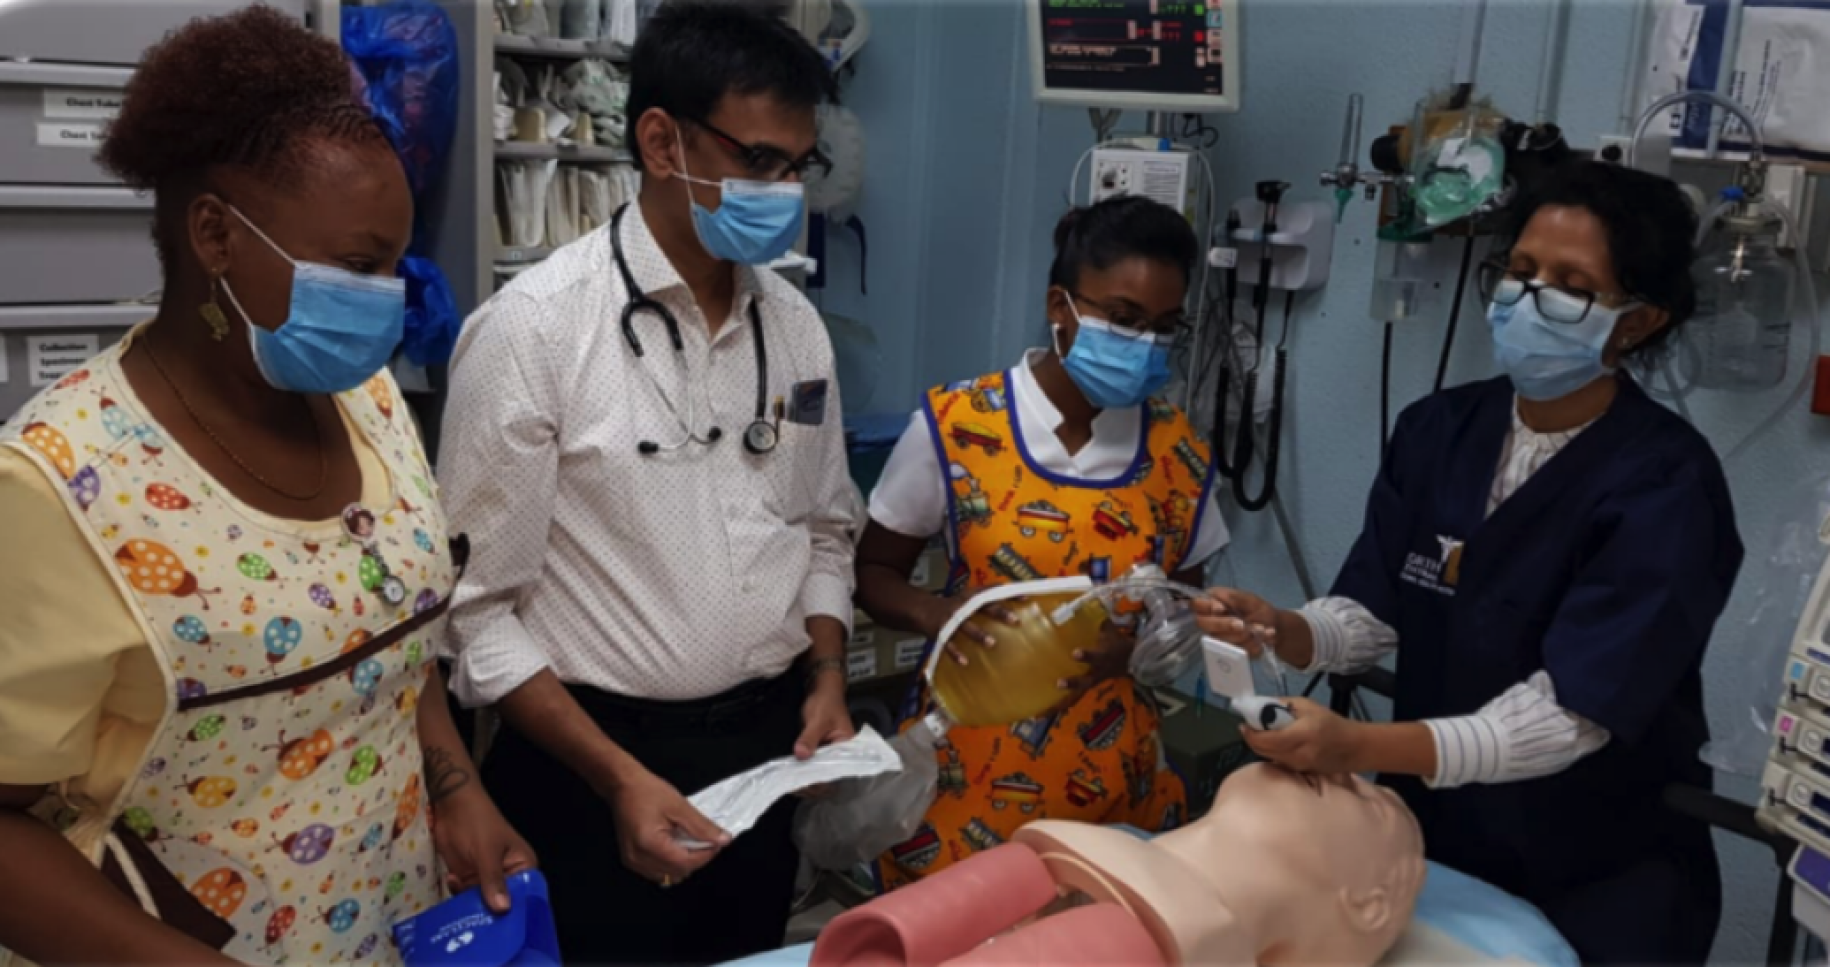 La imagen muestra a trabajadores sanitarios probando nuevos suministros para salvar vidas adquiridos por el PNUD.